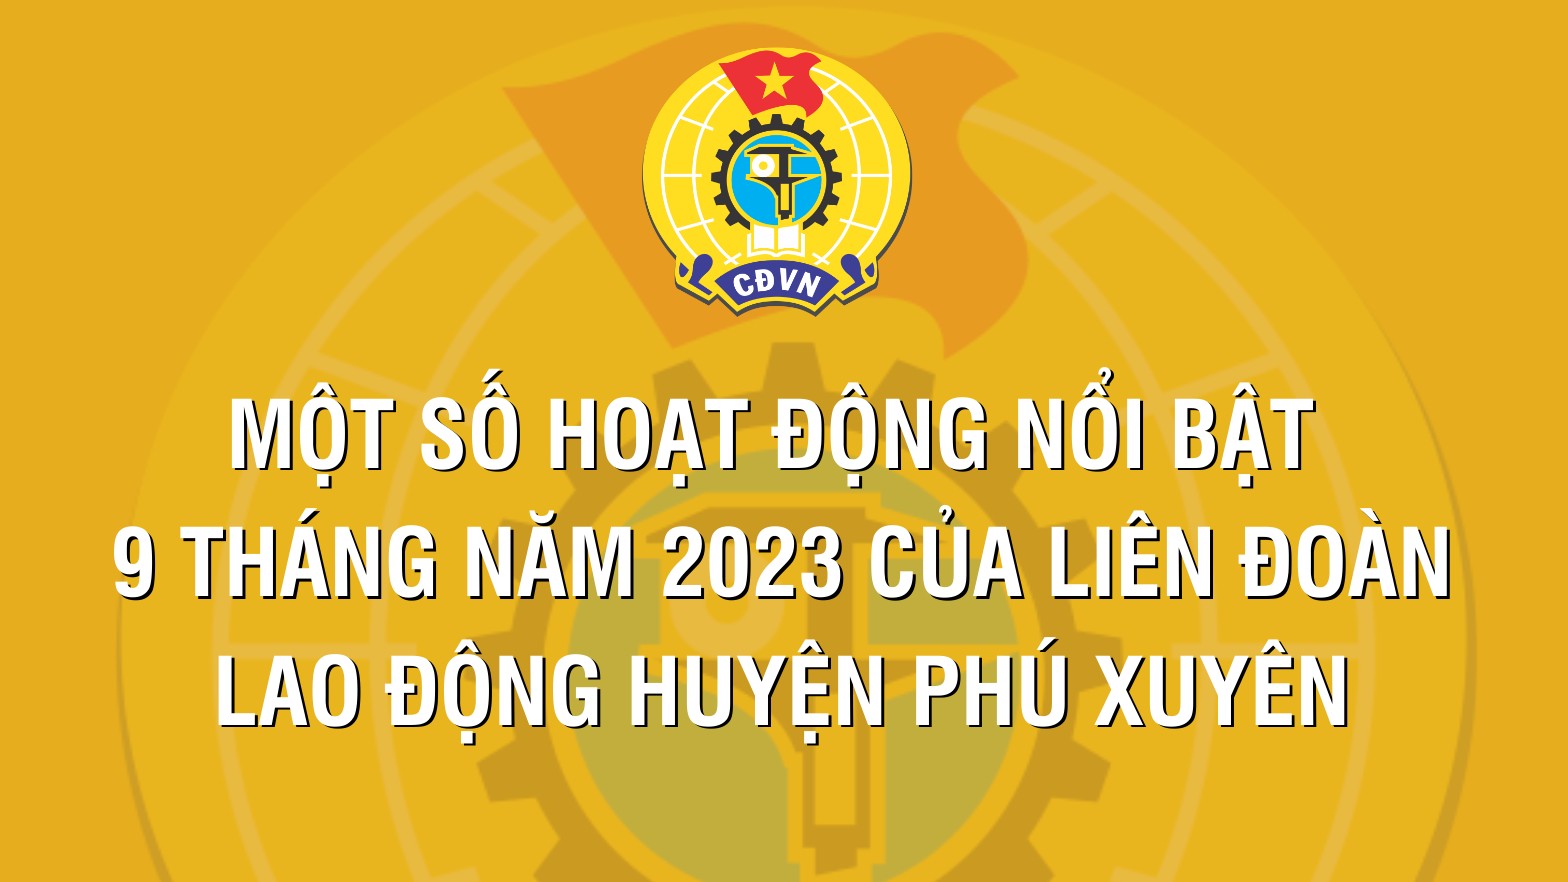 Một số hoạt động nổi bật 9 tháng năm 2023 của Liên đoàn Lao động huyện Phú Xuyên